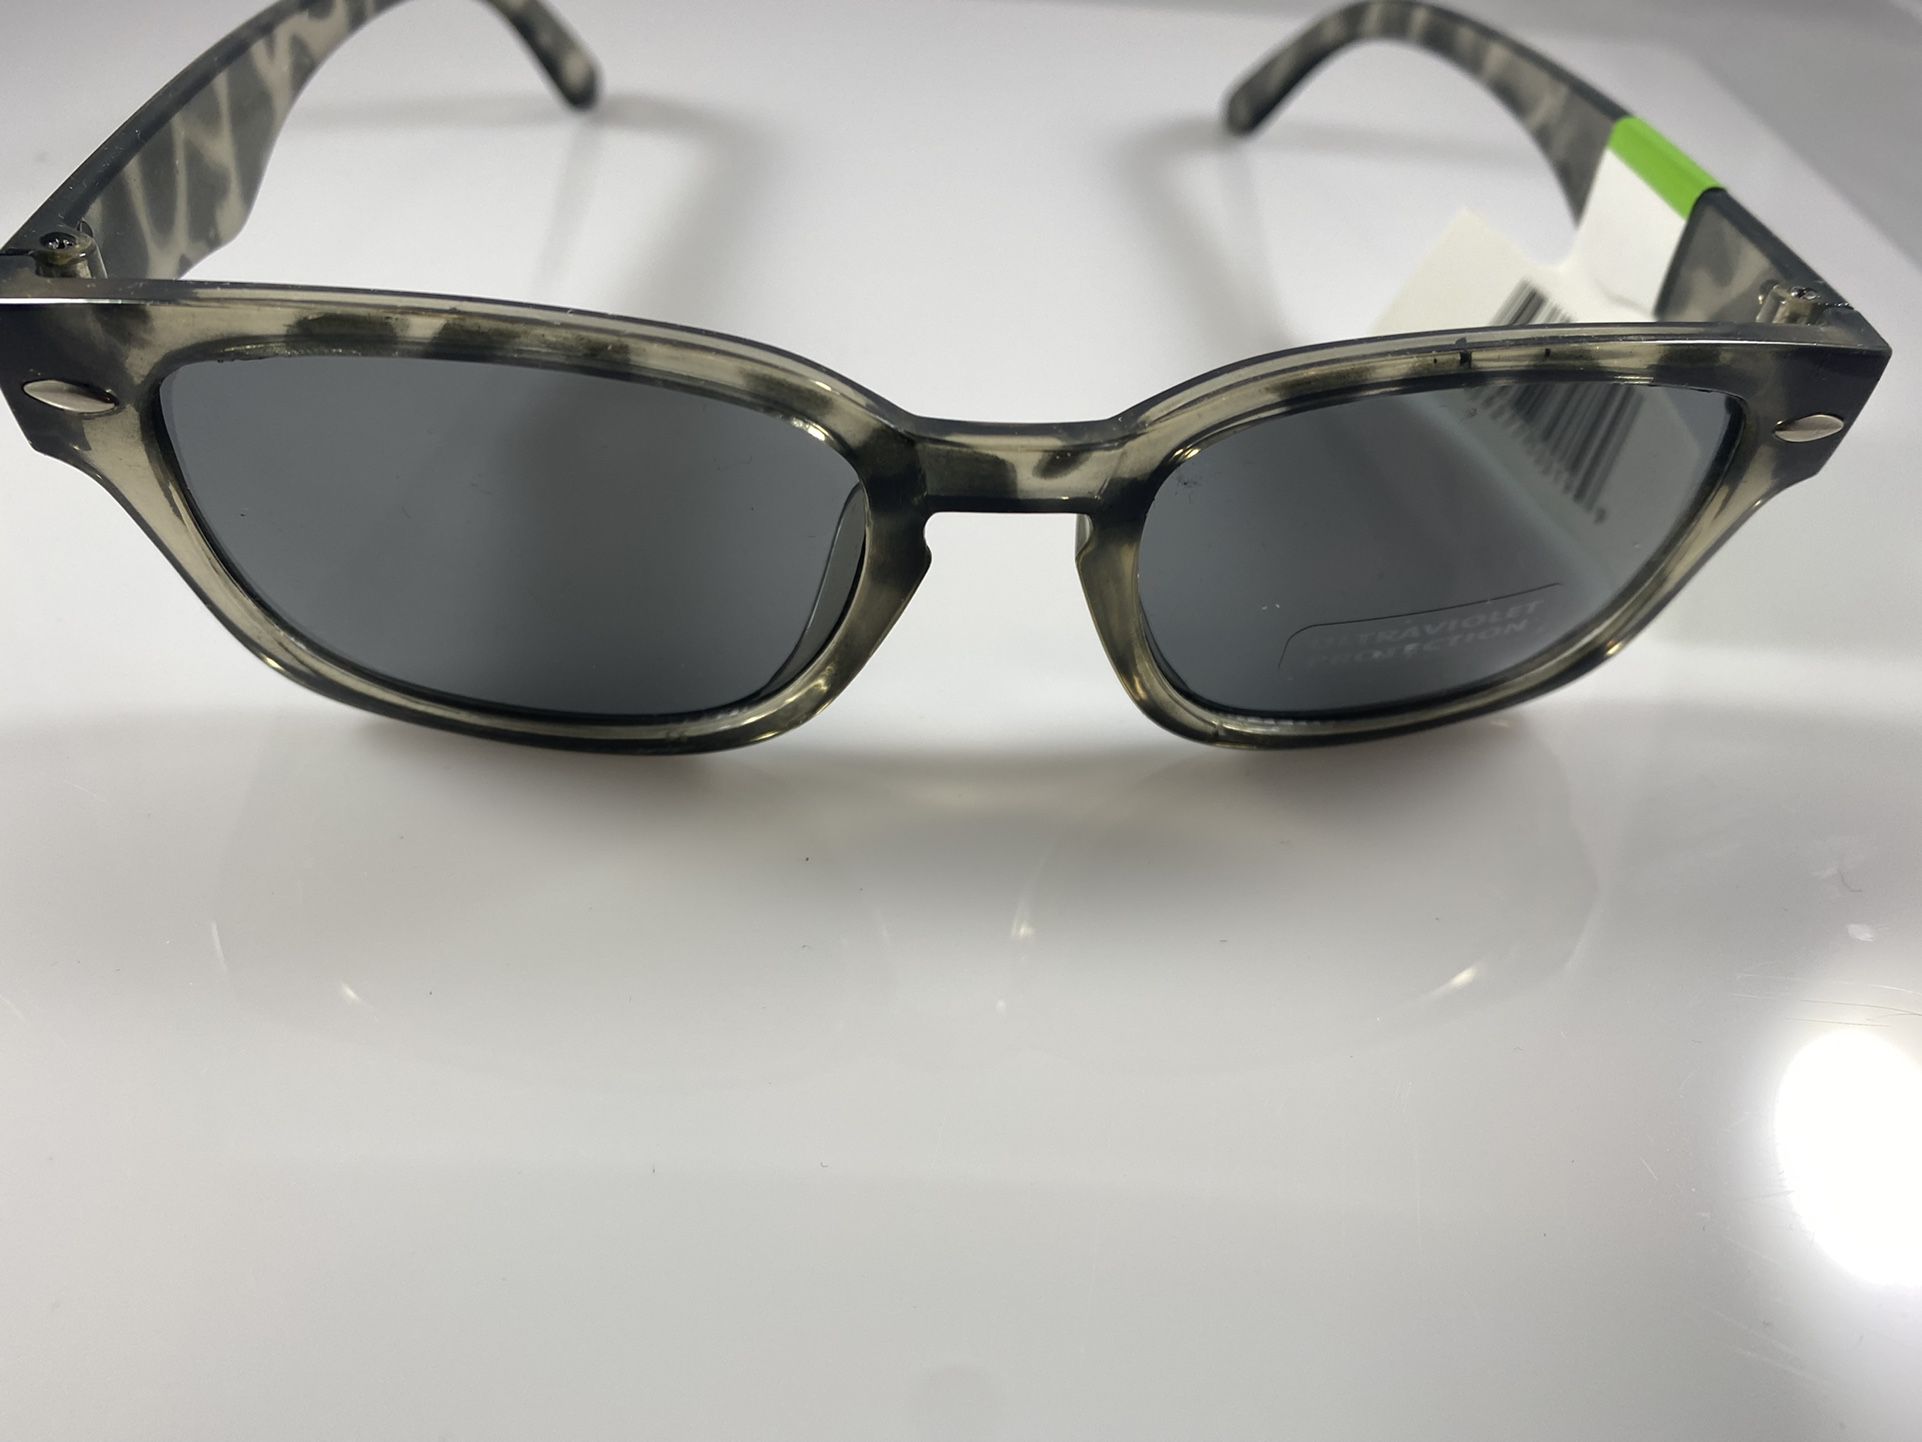 Grey Tortoise Shell Sunglasses for Women